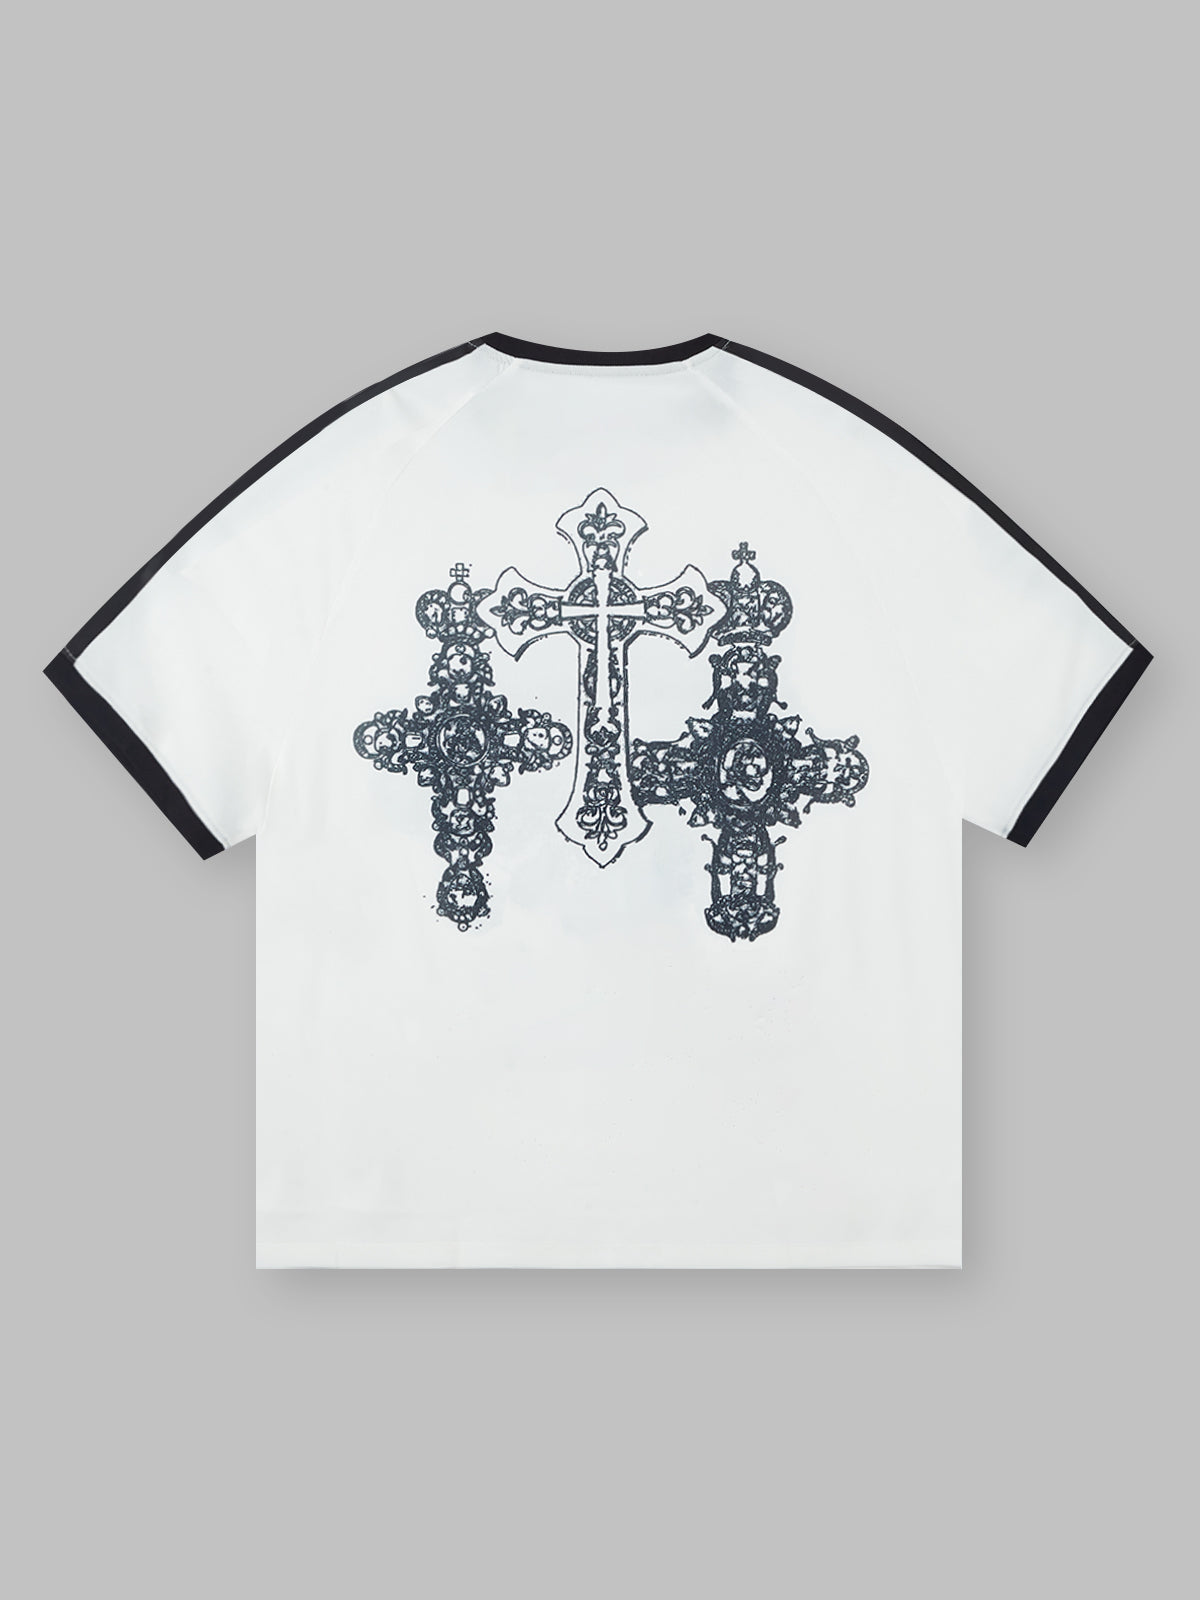 障害物と危険© The Thorns Cross Movement Tシャツ